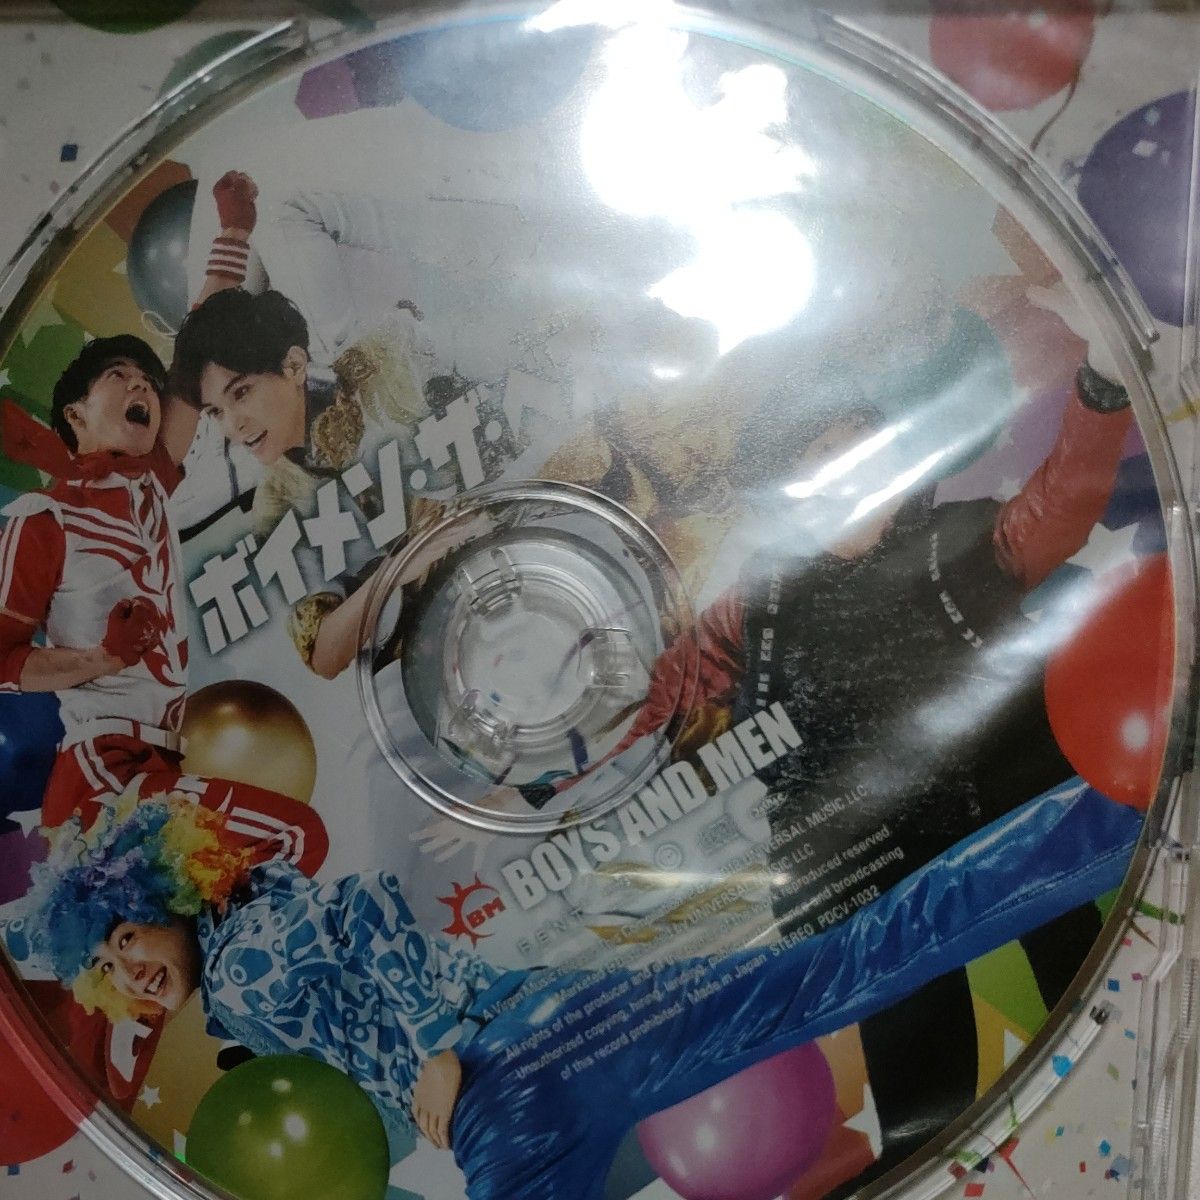 BOYS AND MEN ヴーカヴーカ 恋の筋肉  通常盤 12cmCD Single 、ボイメンザベスト 2枚セット